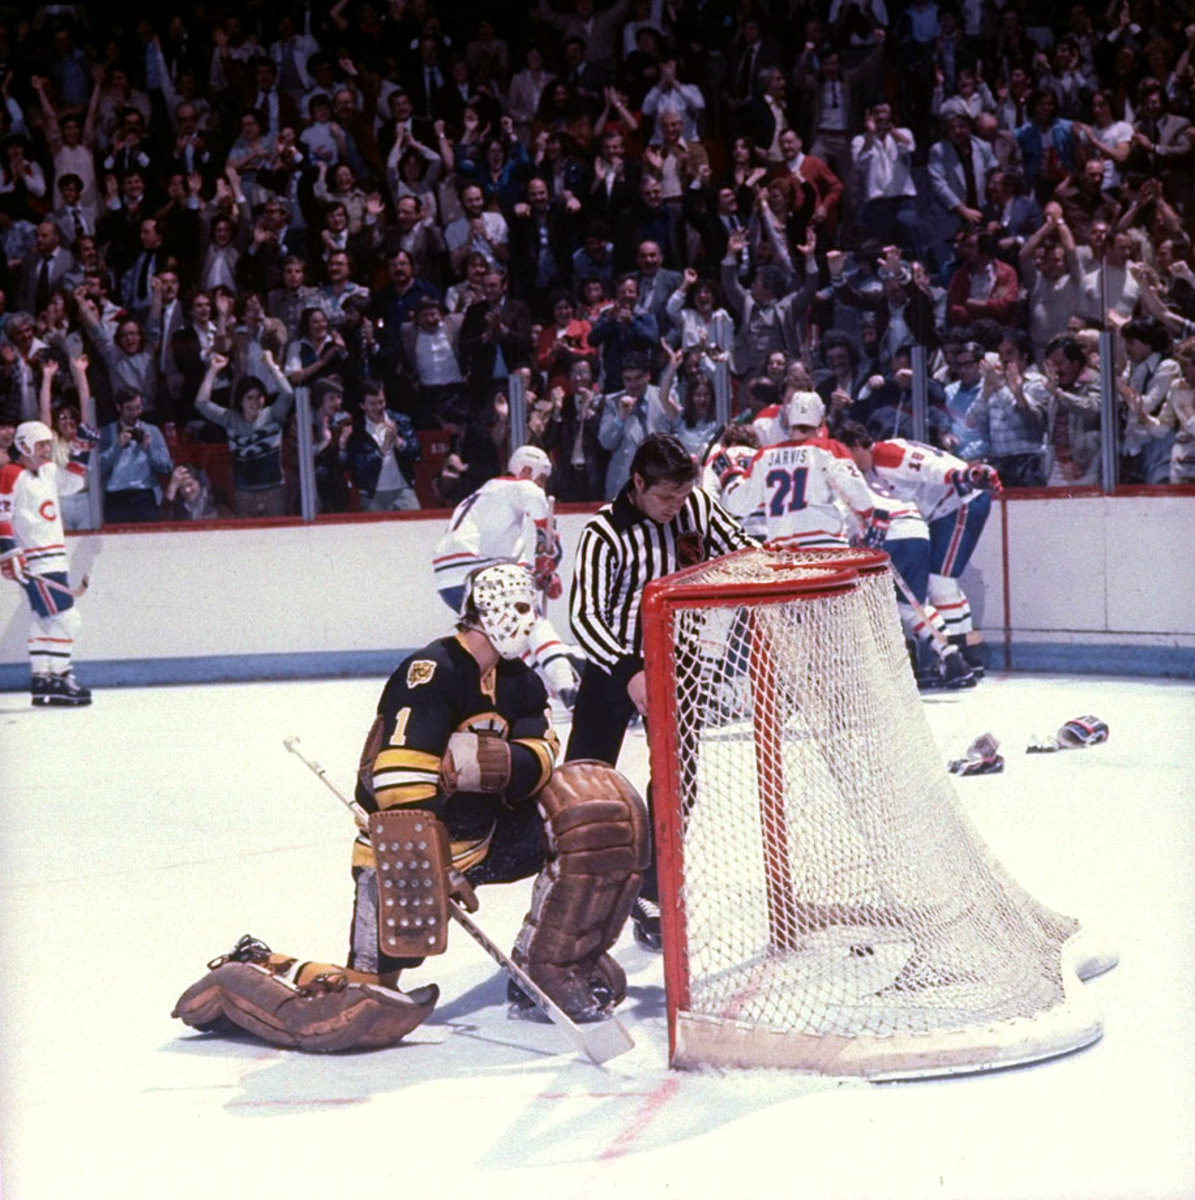 1979-Canadiens-Bruins-Game-7-Yvon-Lambert-Gerry-Cheevers-05809530_0.jpg